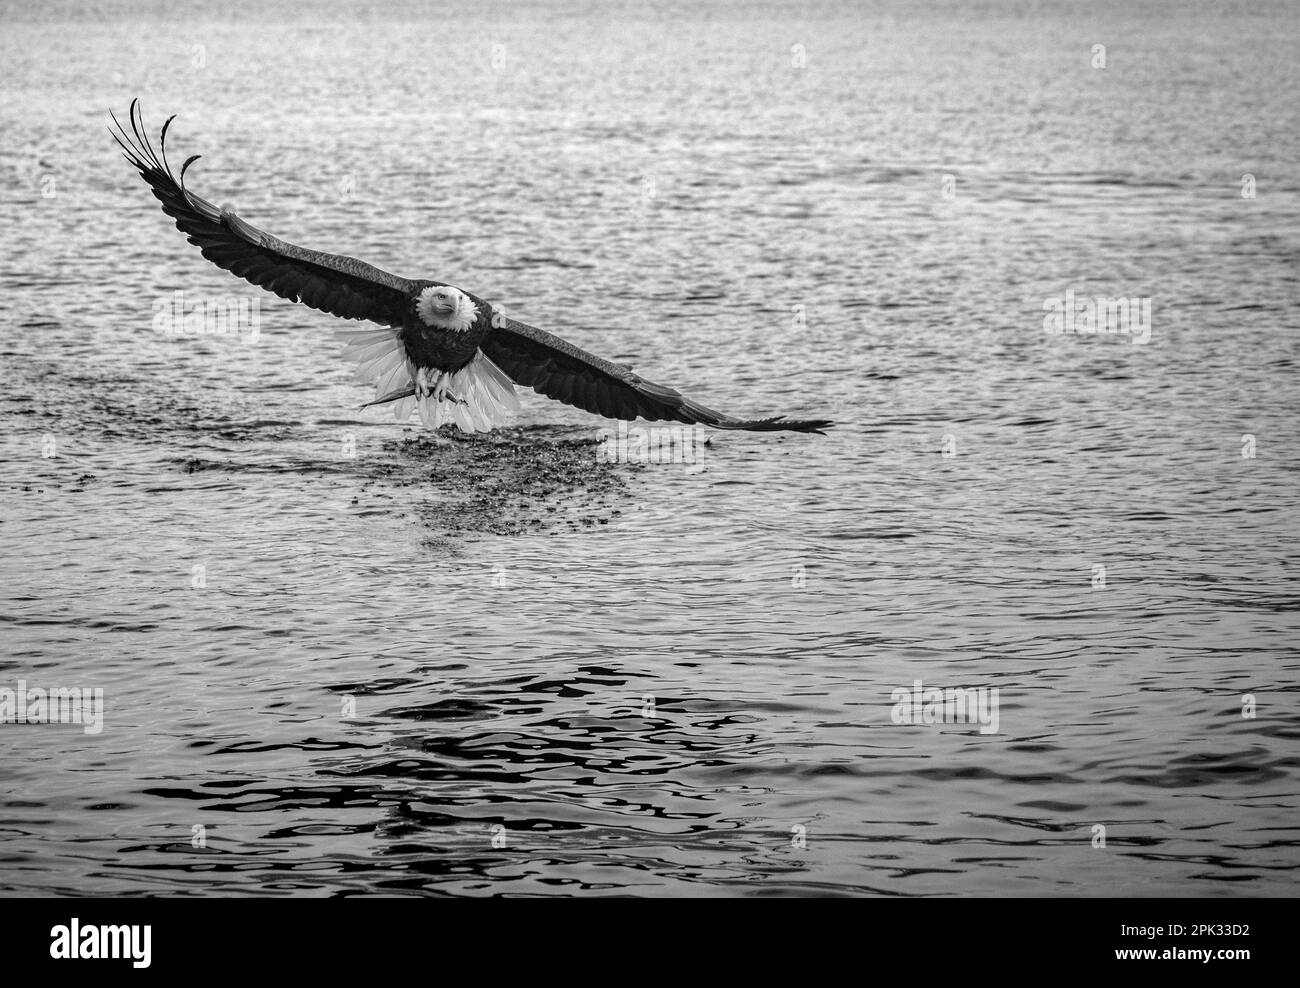 Pesca d'aquila balsamo sull'acqua con ali completamente estese. In bianco e nero. Buona messa a fuoco degli occhi Foto Stock